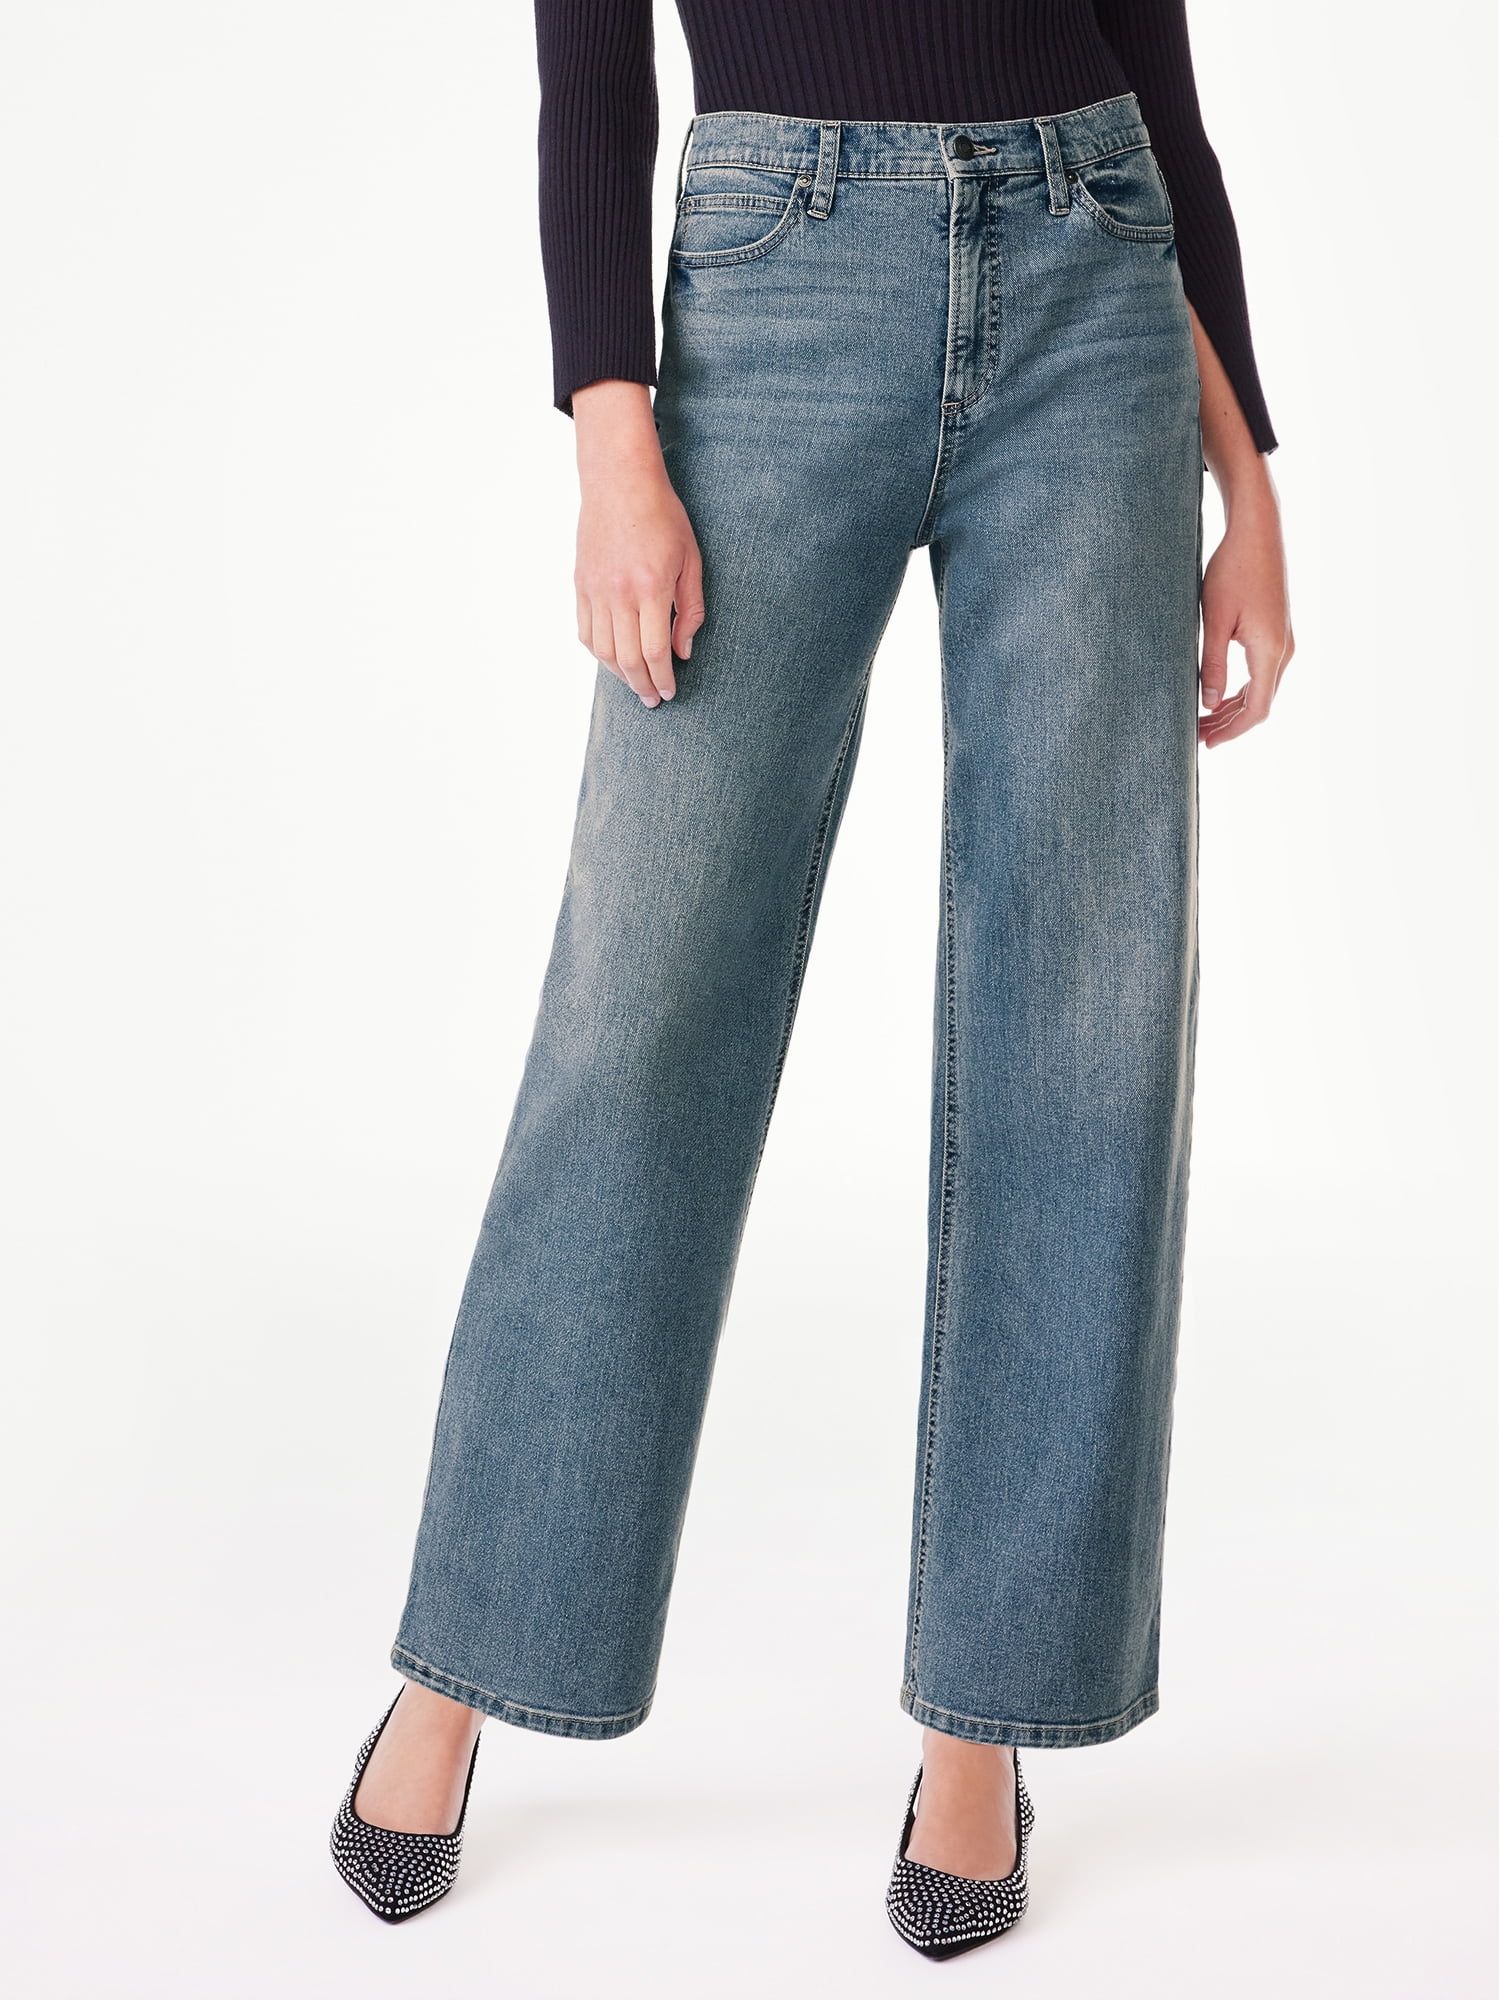 Scoop Women's Slouchy Boyfriend High Rise Jeans, Sizes 0-18 | Walmart (US)